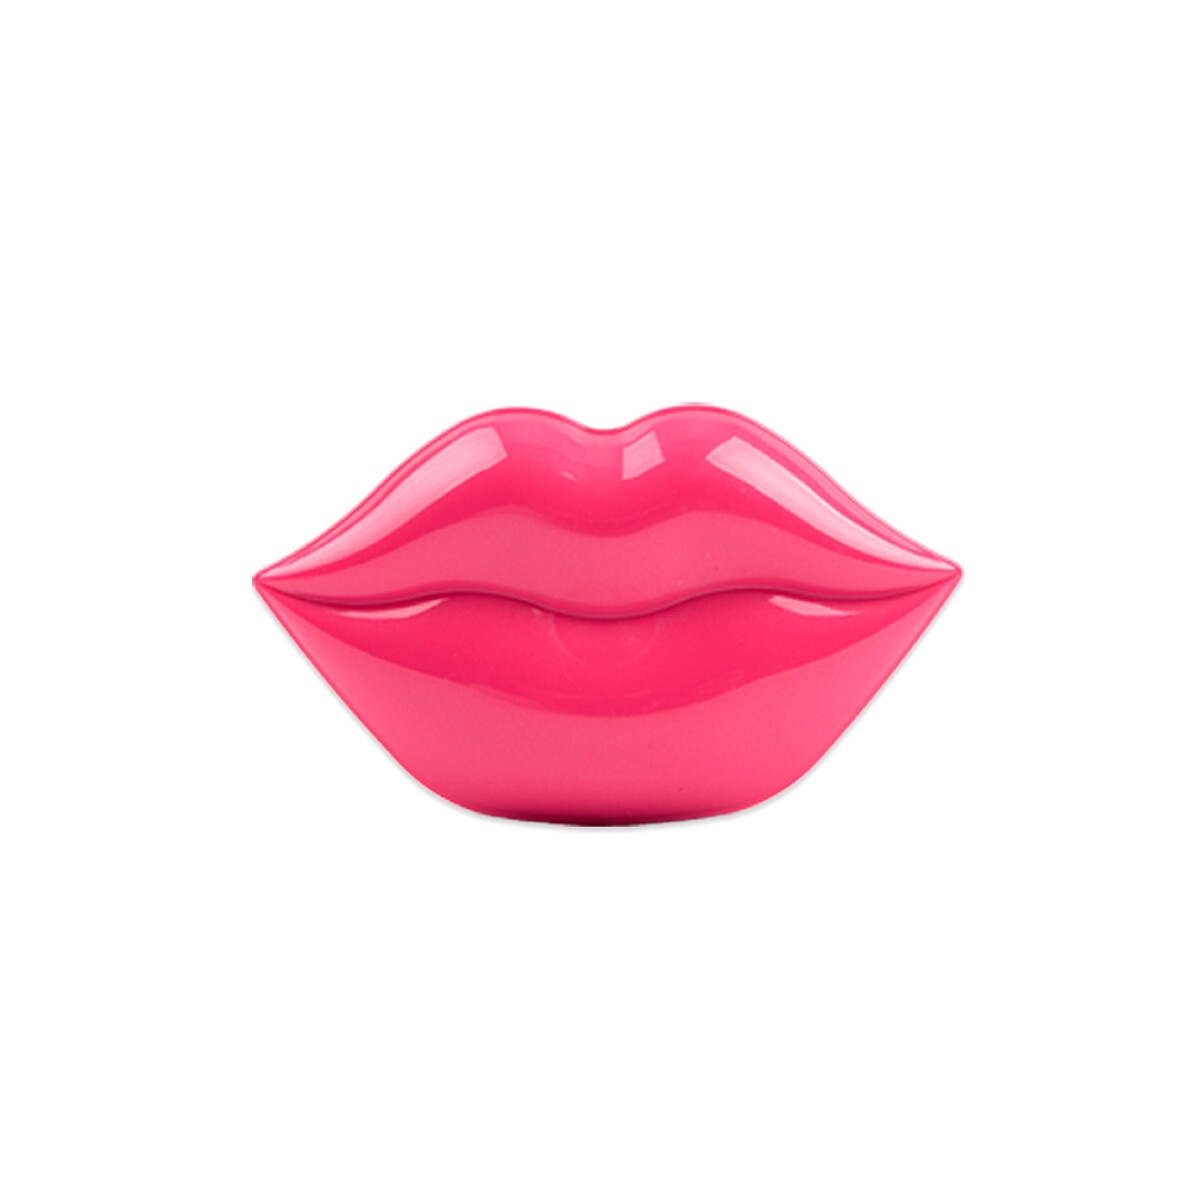 LIP MASK Mascarilla de labios (hidratación, reparación y nutrición de labios) 